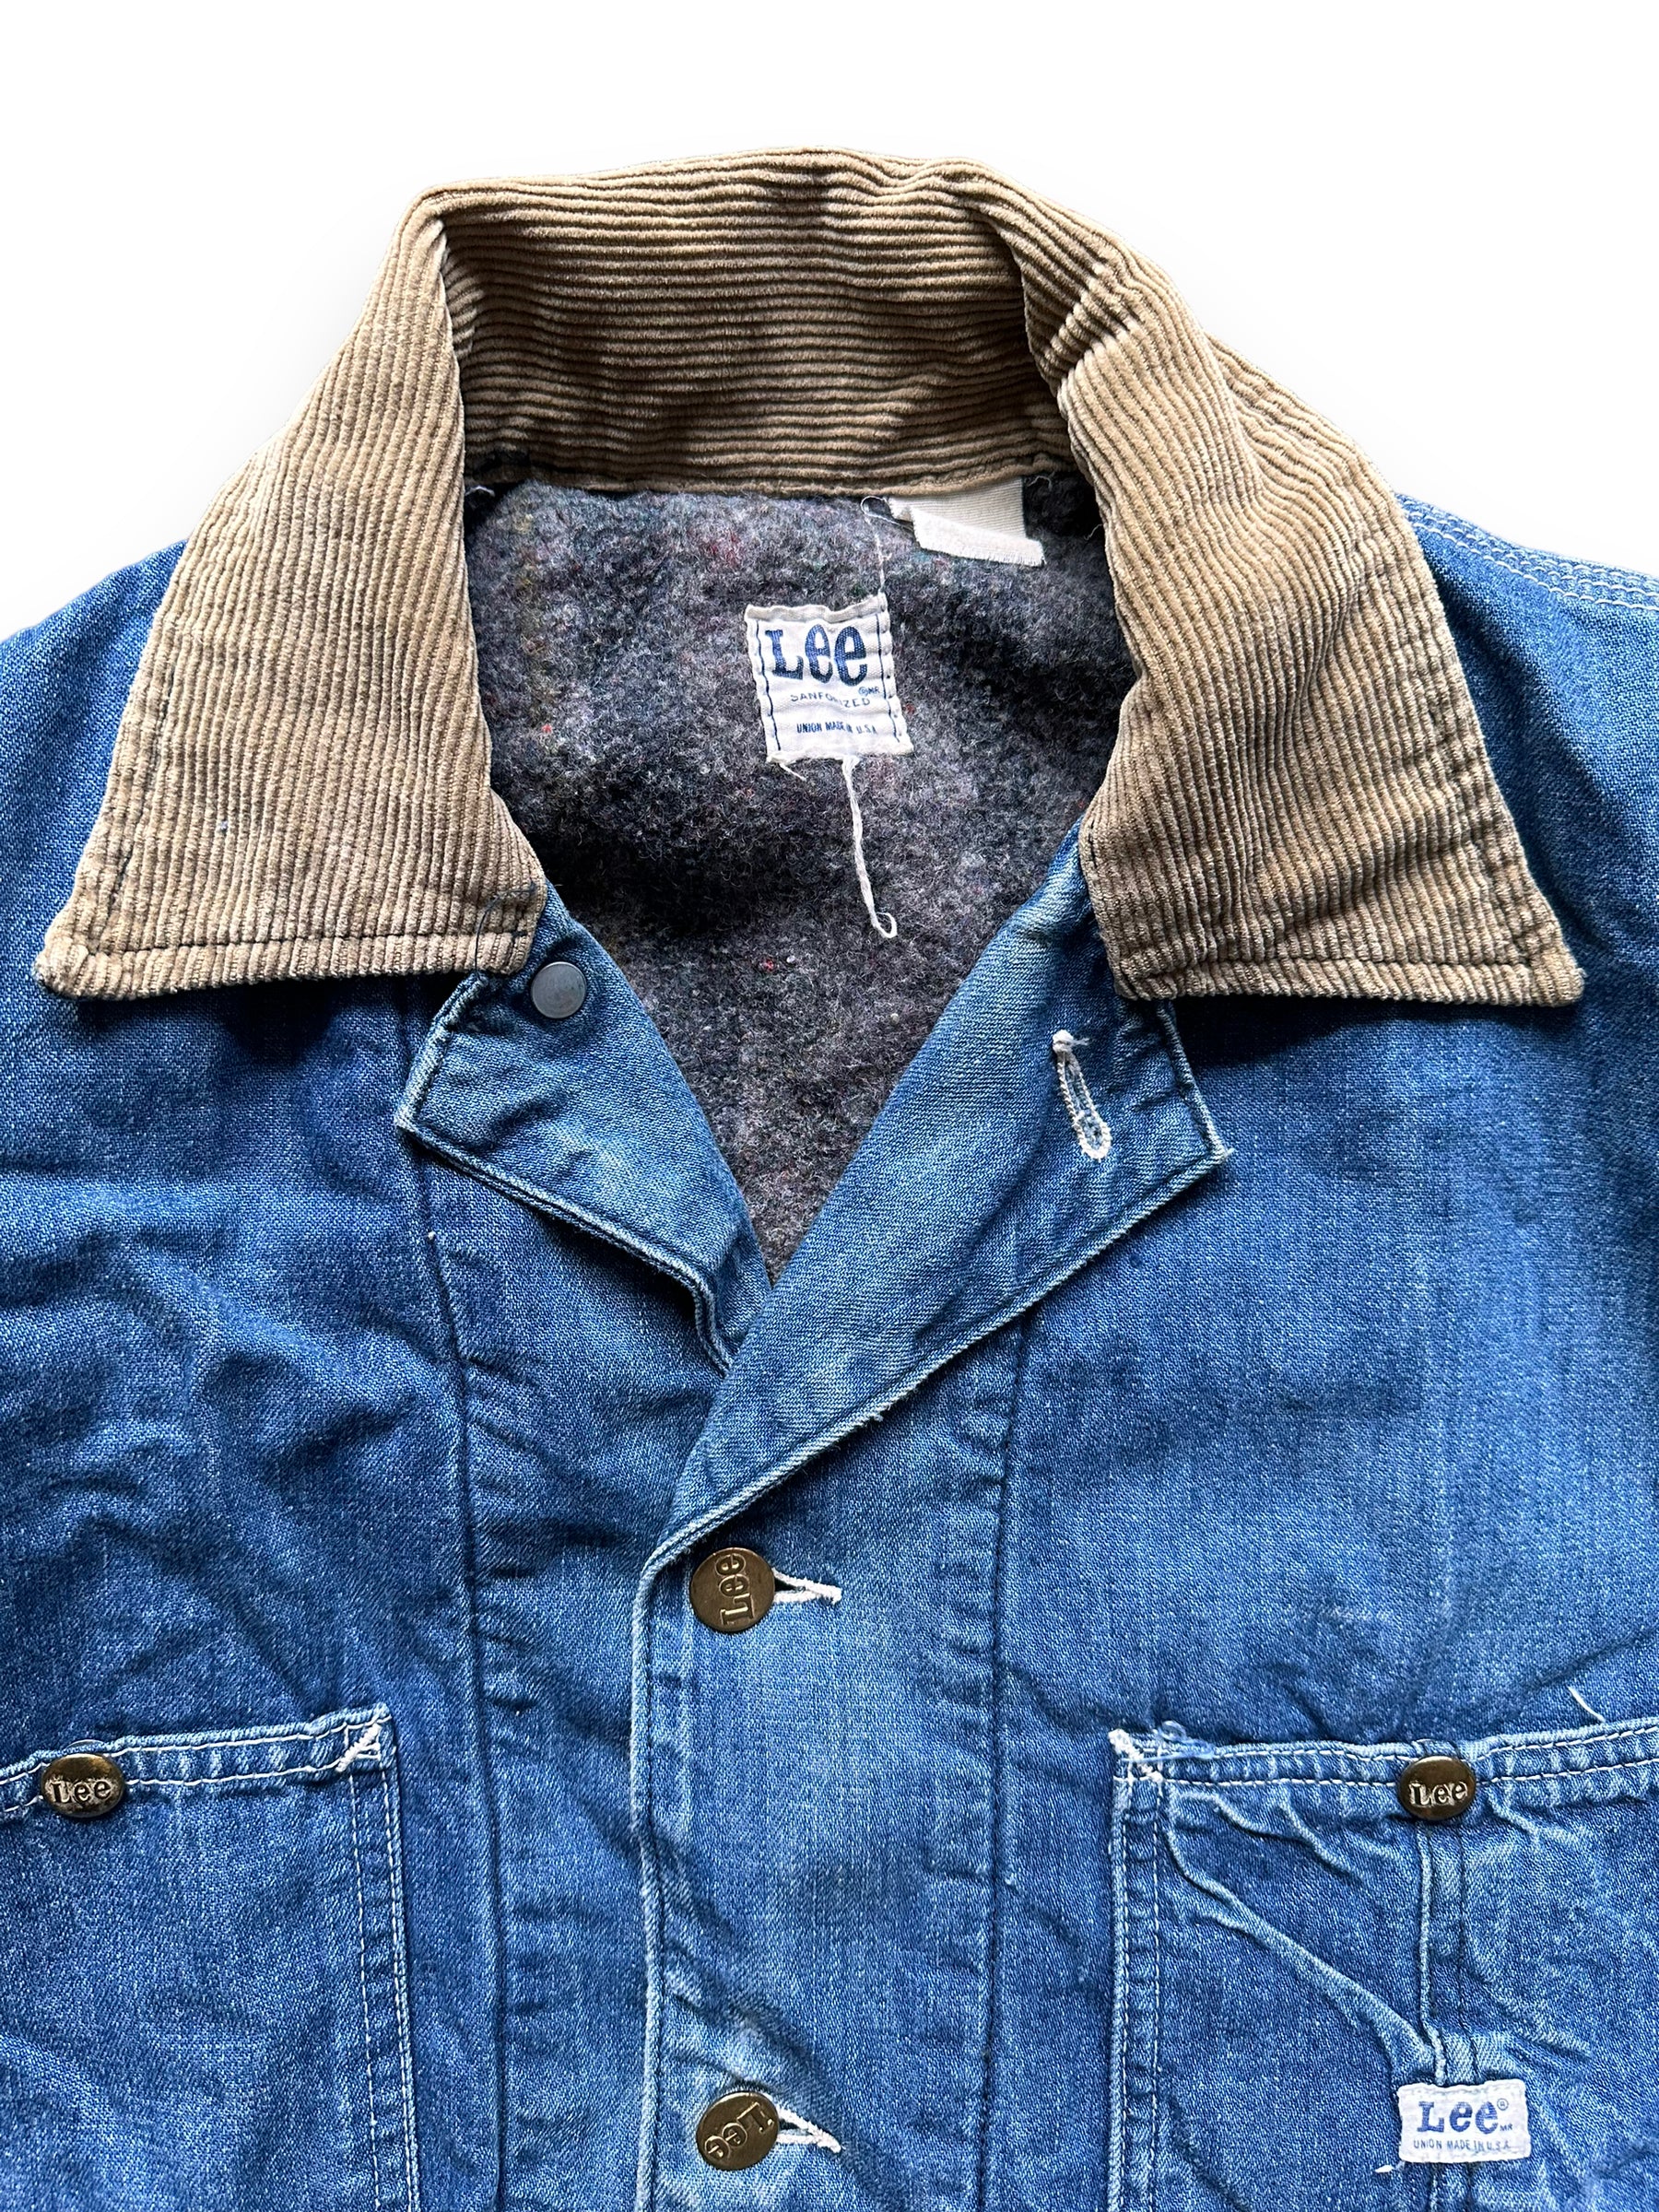 Tag View on Vintage Blanket Lined Lee Denim Chore Jacket SZ XL| Vintage Denim Workwear | Seattle Vintage Workwear